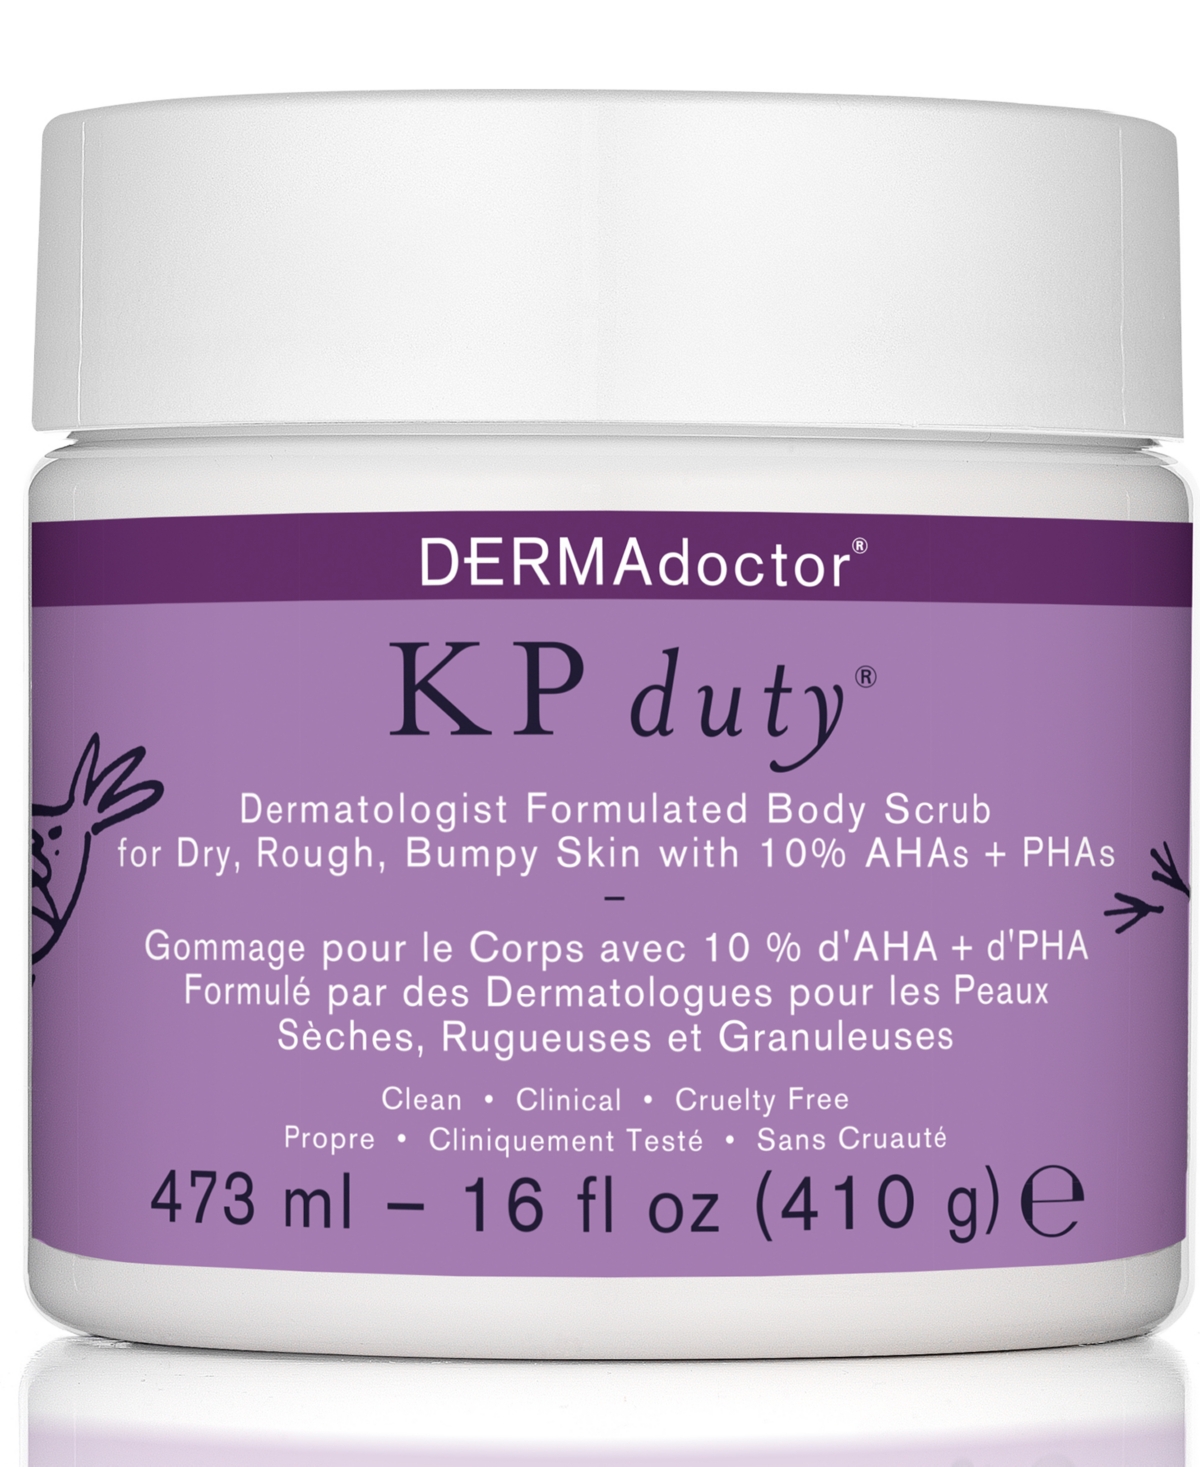 Kp Duty Dermatologist Formulated Body Scrub For Dry, Rough, Bumpy Skin, 16 oz.